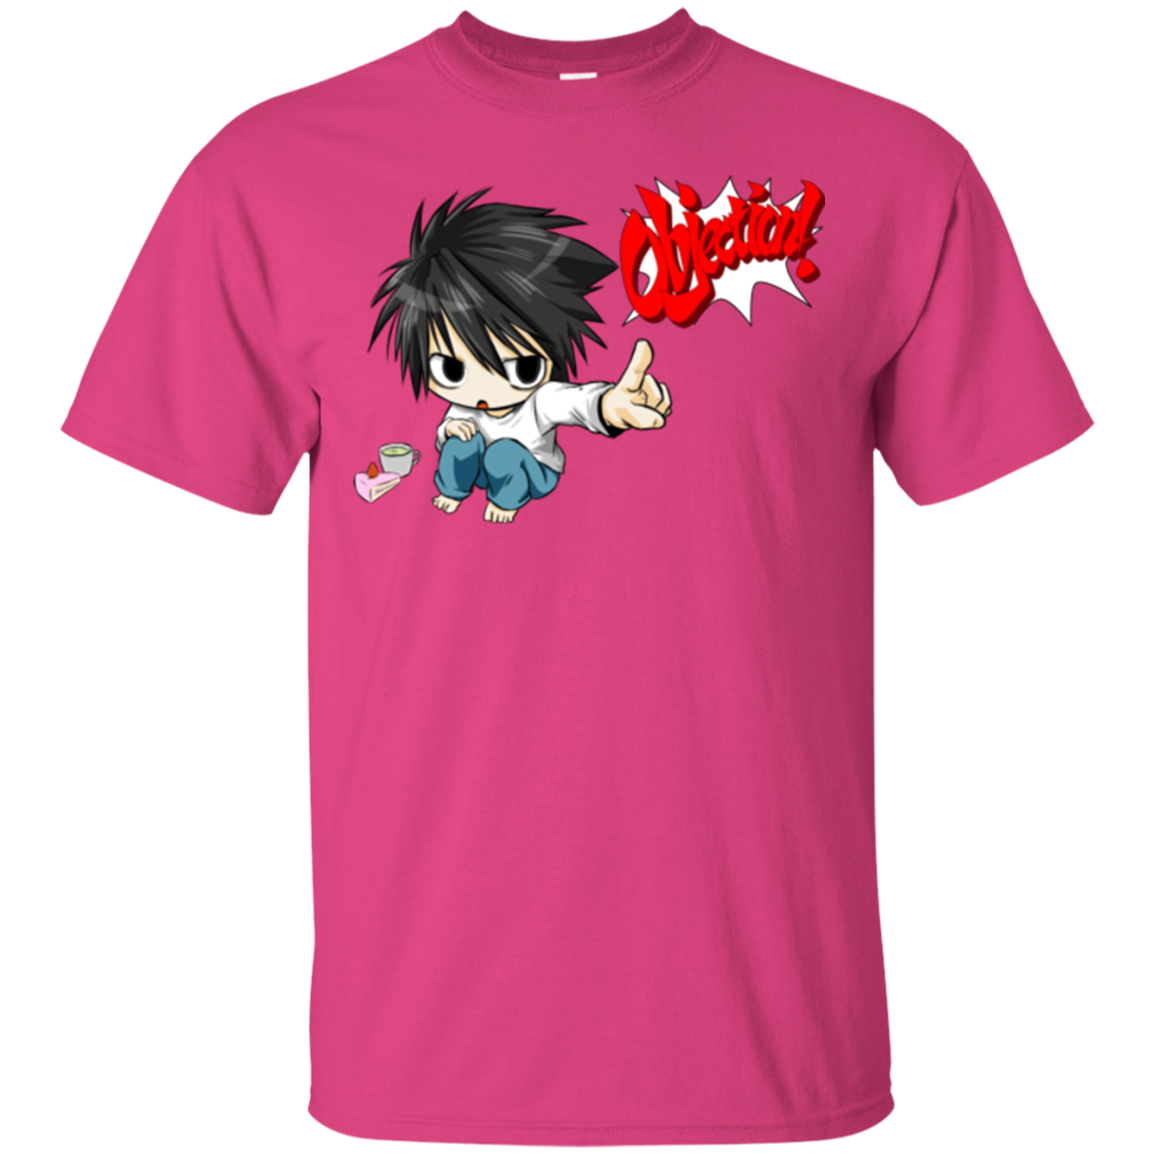 L Objection! T-Shirt